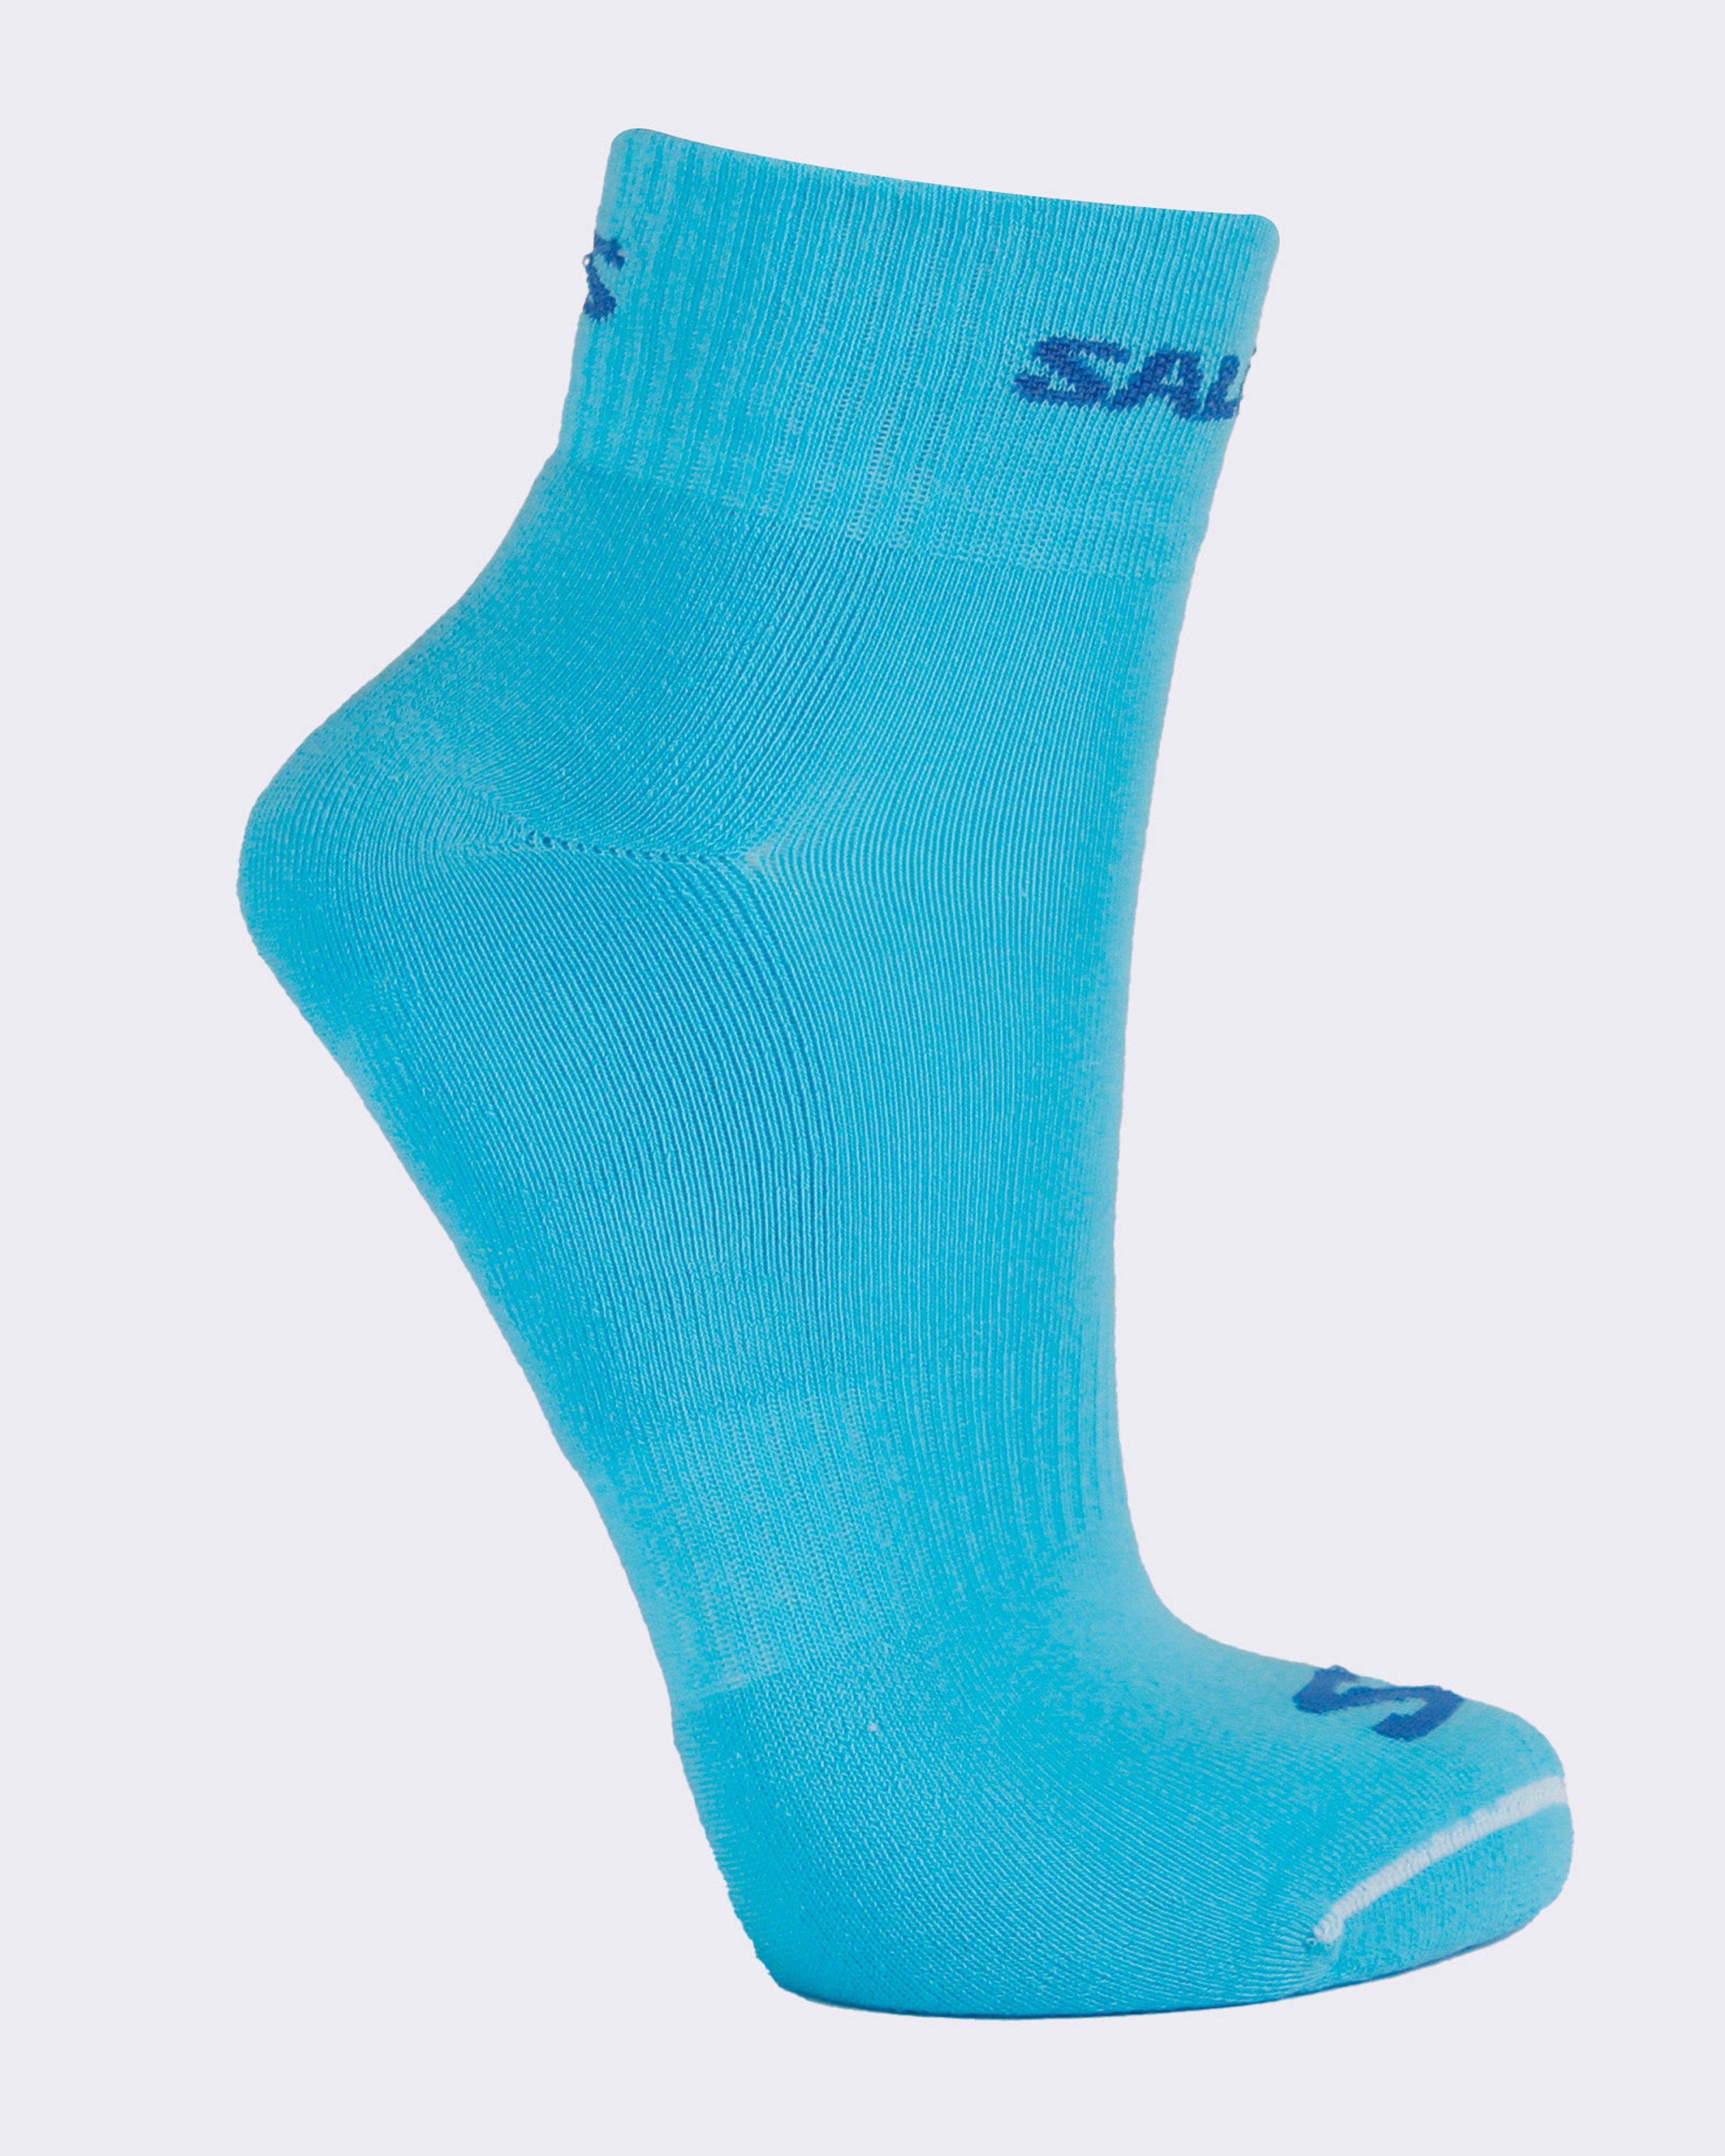 Salomon Evasion Socks - 2 Pack  -  Light Blue